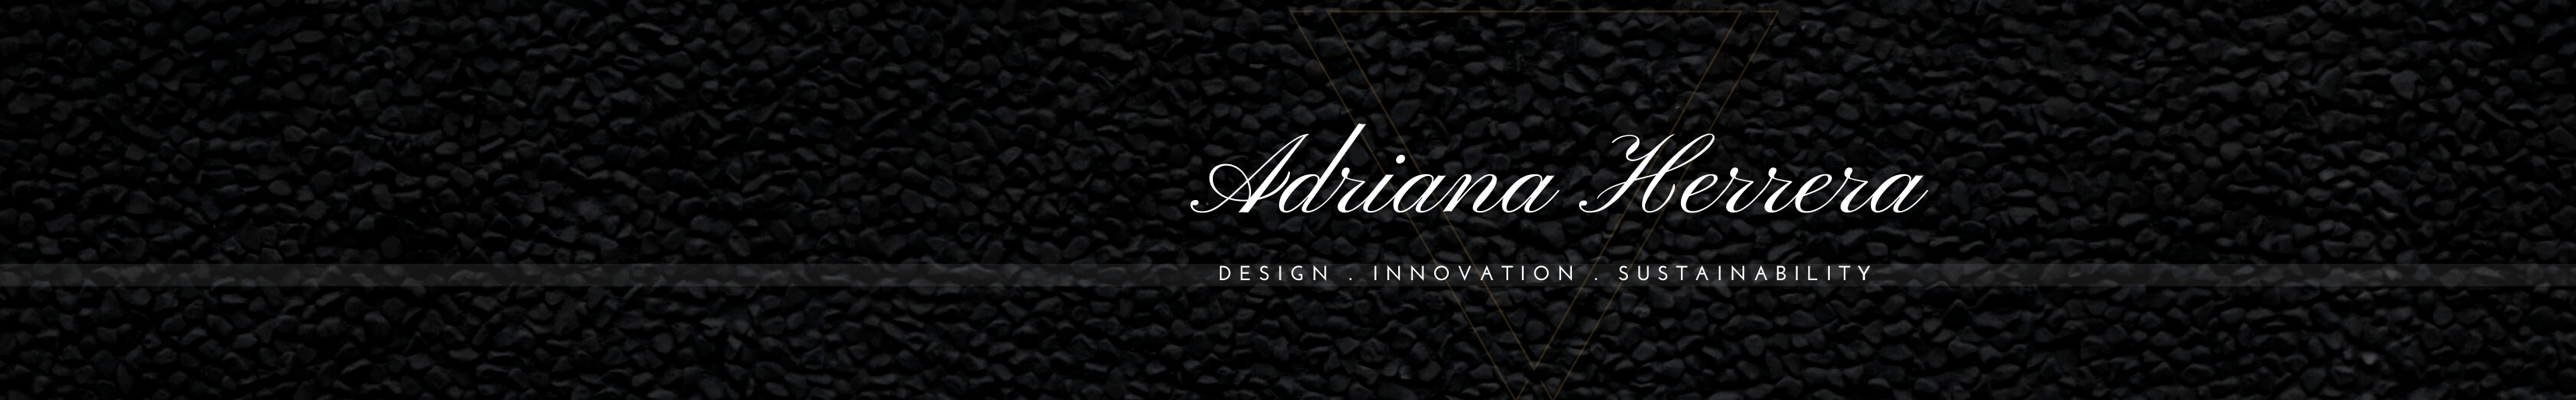 Adriana Herrera's profile banner